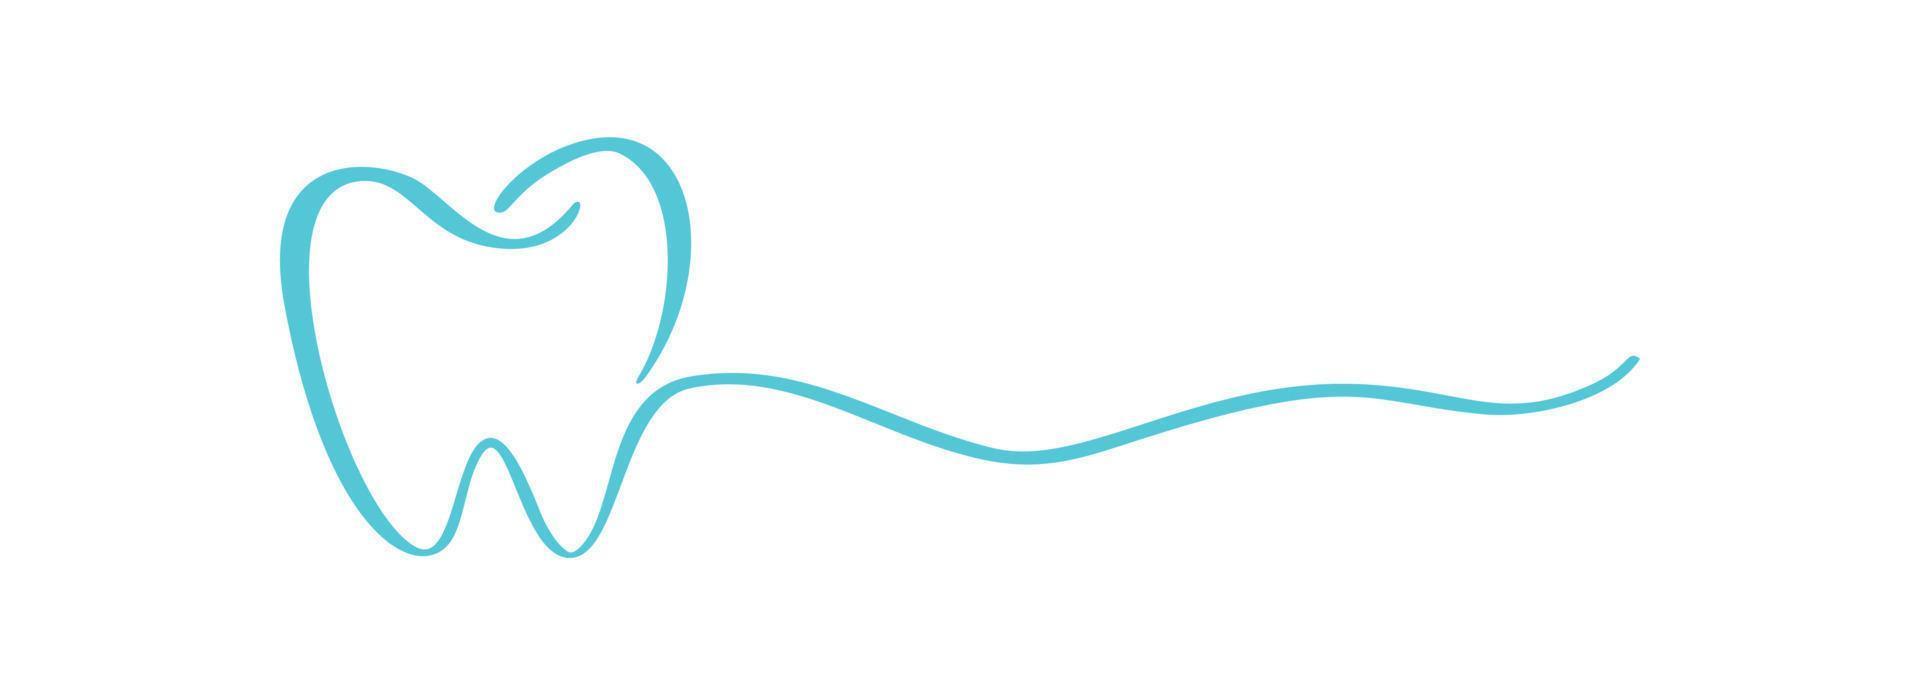 blå tand logotyp ikon och linje för text för tandläkare eller stomatologi dental vård design mall. vektor isolerat svart linje kontur tand symbol för dental klinik eller tandvård medicinsk Centrum